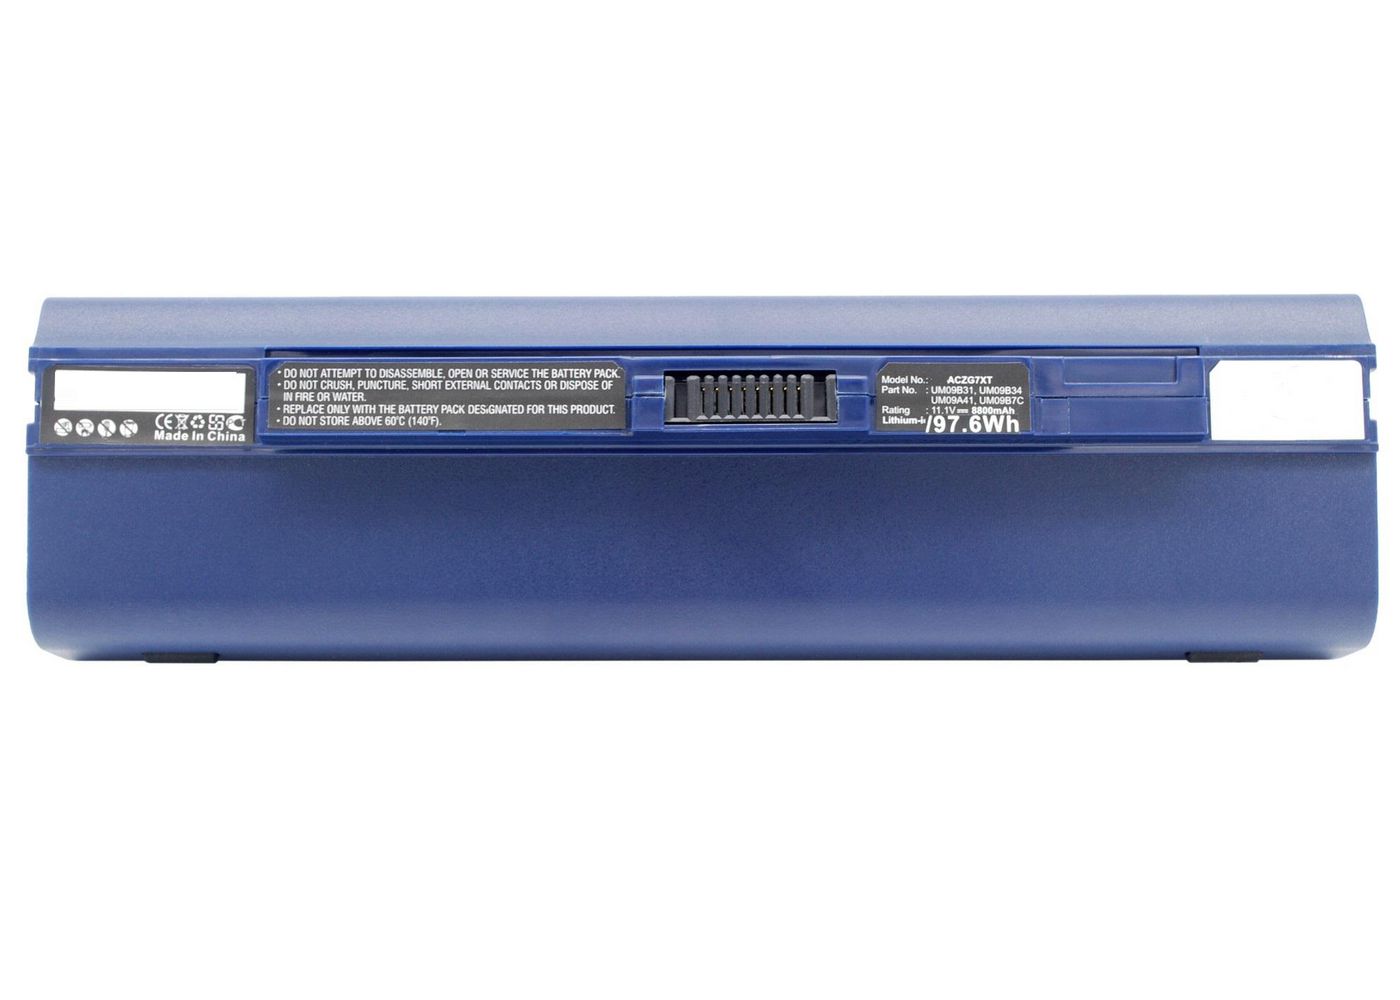 CoreParts MBXAC-BA0064 Laptop Battery for Acer 